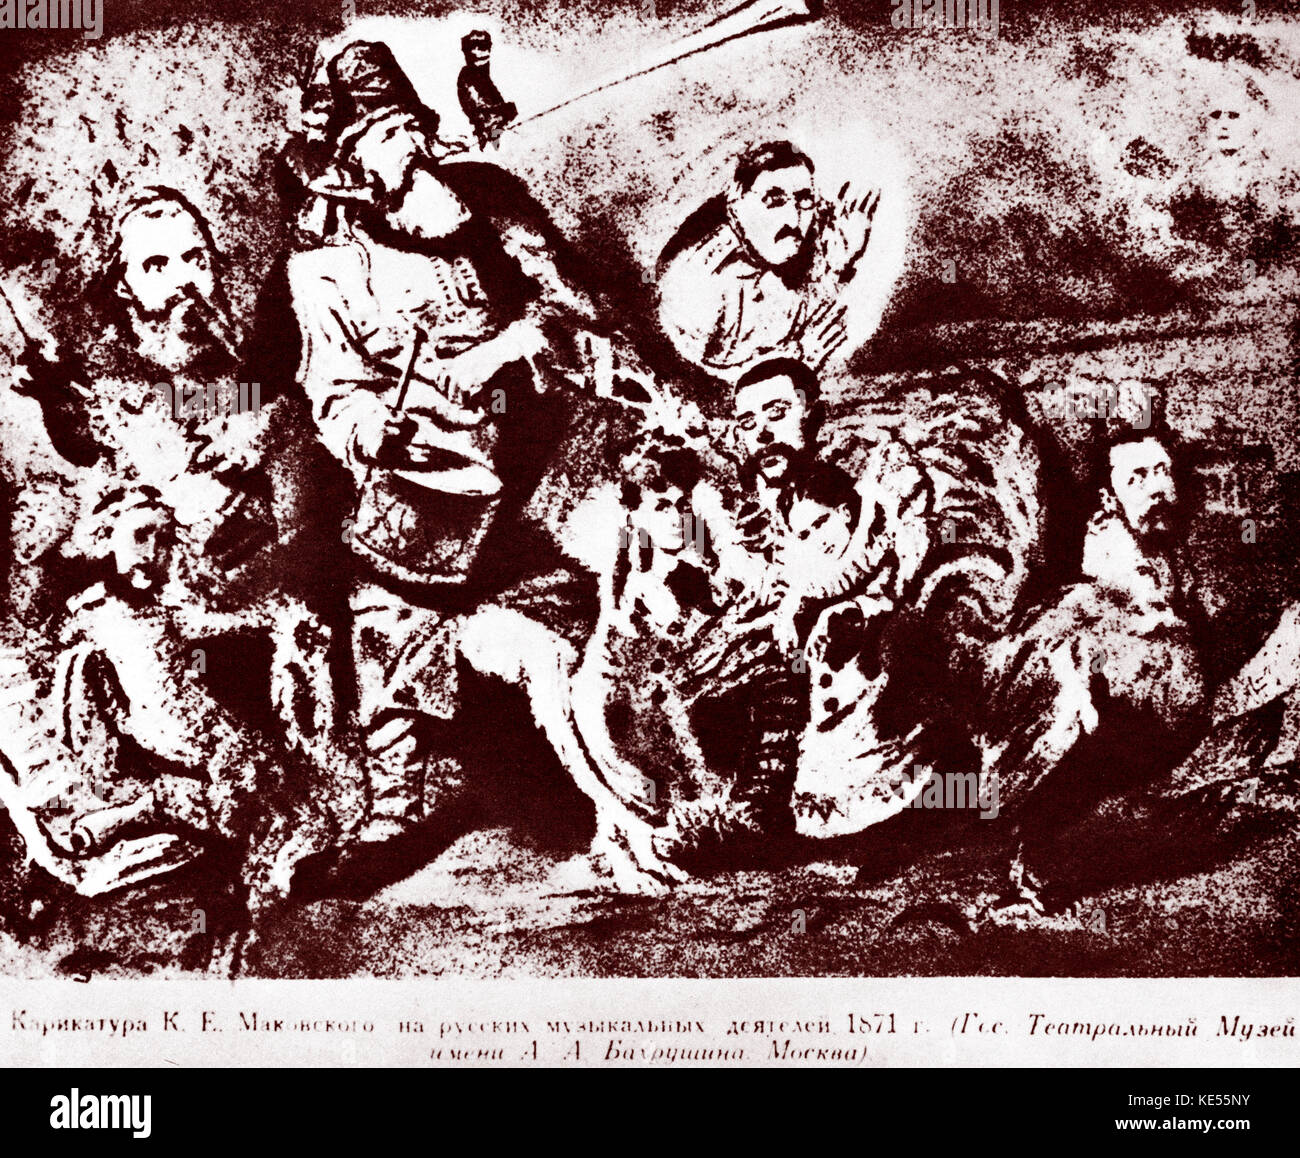 Die mächtigen Fünf oder die Mächtigen Handvoll (Mogucaja kucka). Karikatur von K E Makovsky, 1871. Die fünf Komponisten Cui, Balakirev, Rimski-Korsakow, Mussorgski, Borodin abgelehnt hatte, eine private Leistung von Dargomishsky's Ton Gues' für Turgenjew zu geben. Als T hatte sie mit Bemerkungen über Glinka und Balakirev in seinem Roman "Am Vorabend" beleidigt. Von l nach r: Cesar Cui, Balakirev mit Taktstock, Stasov in Tracht bläst das Horn des Ruhmes und das Schlagen einer Trommel, Victor Hartmann, Architekt und Künstler, deren Ausstellung von Gemälden Mussorgskys "Bilder einer Ausstellung" inspiriert, sitzen auf den Stasov Stockfoto